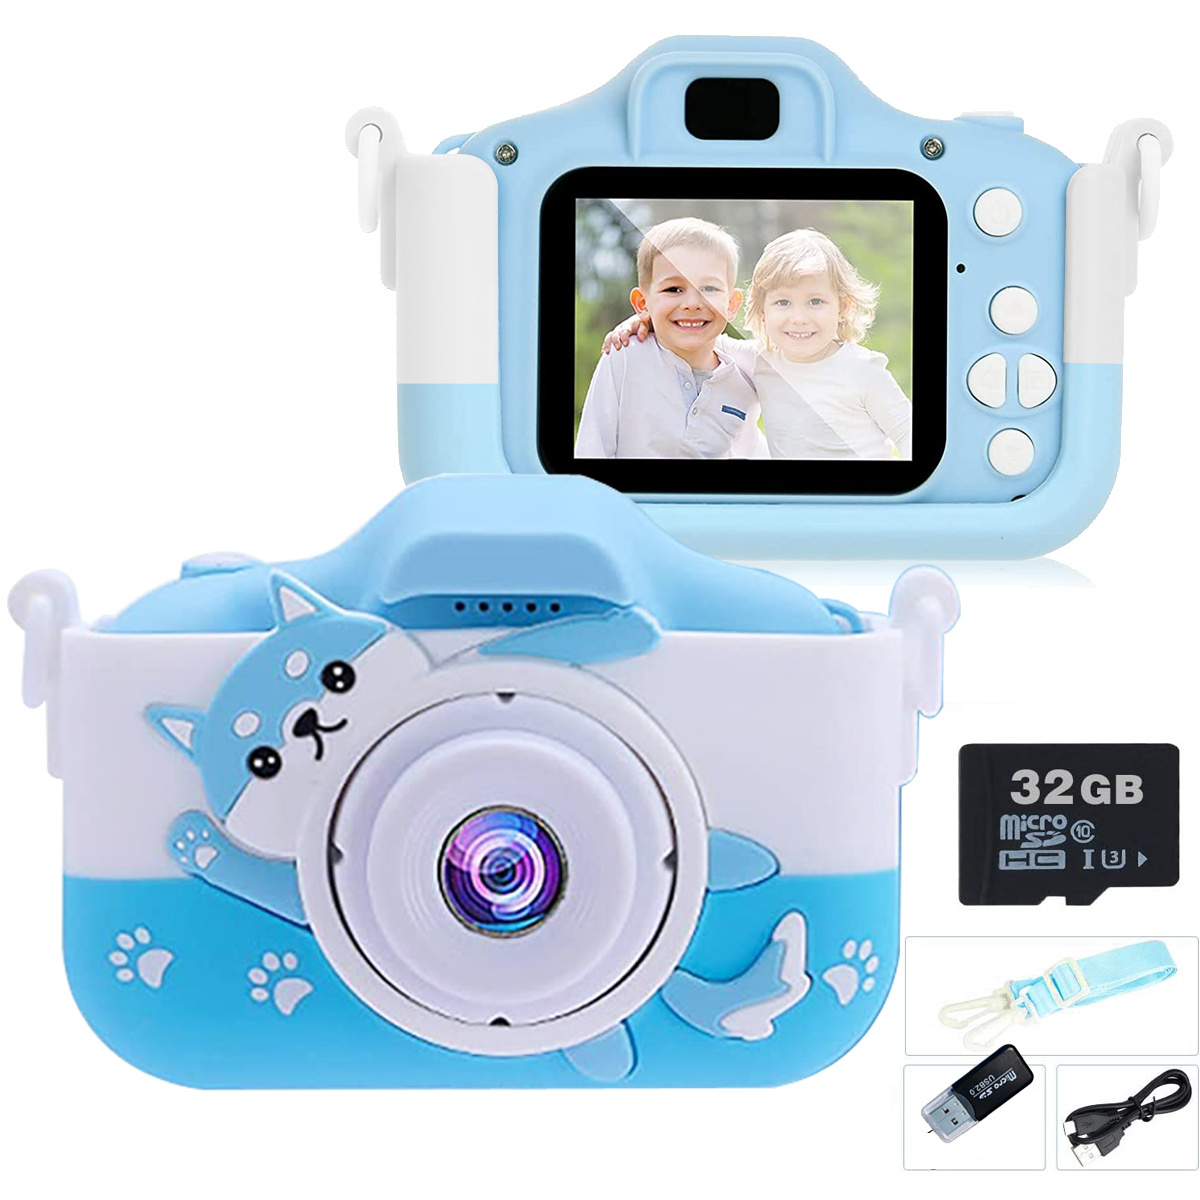 Appareil photo pour enfants, fhd 1080p appareil photo numérique